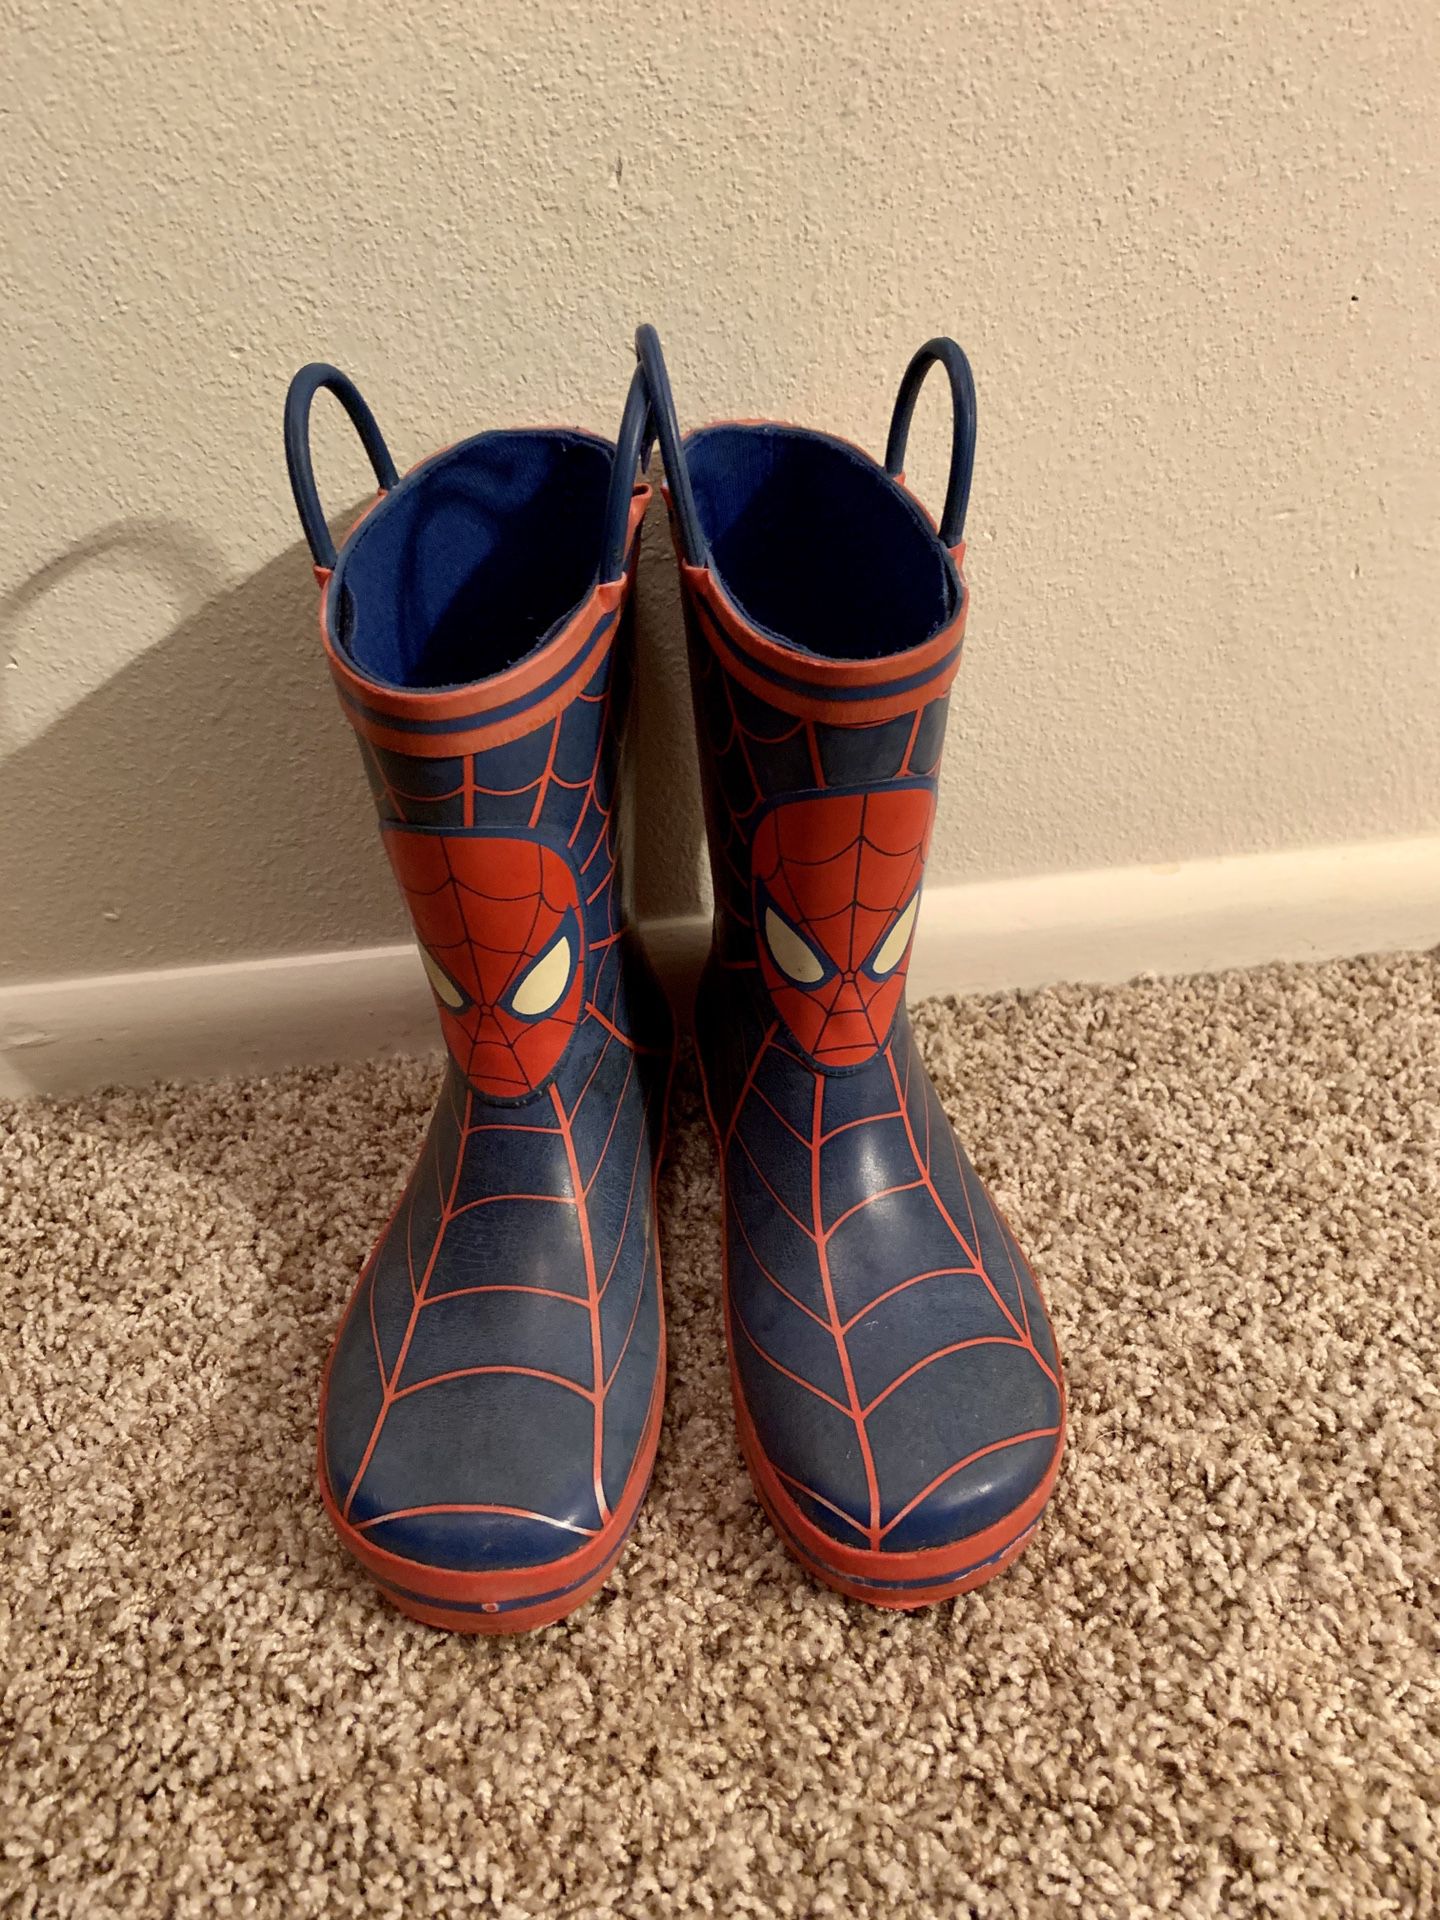 Spider-Man Rain Boots - Size 13